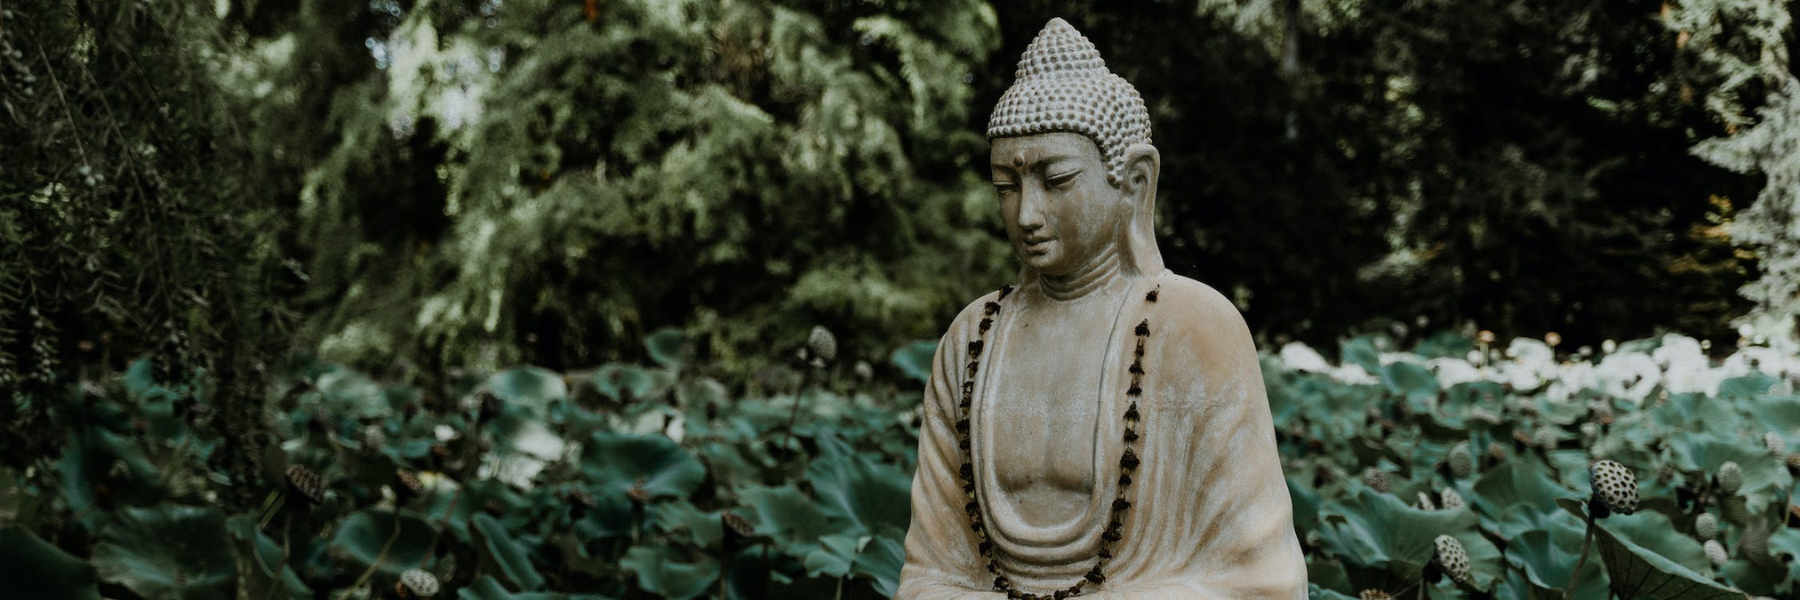 7 lugares para ubicar figuras de Budas en tu hogar.